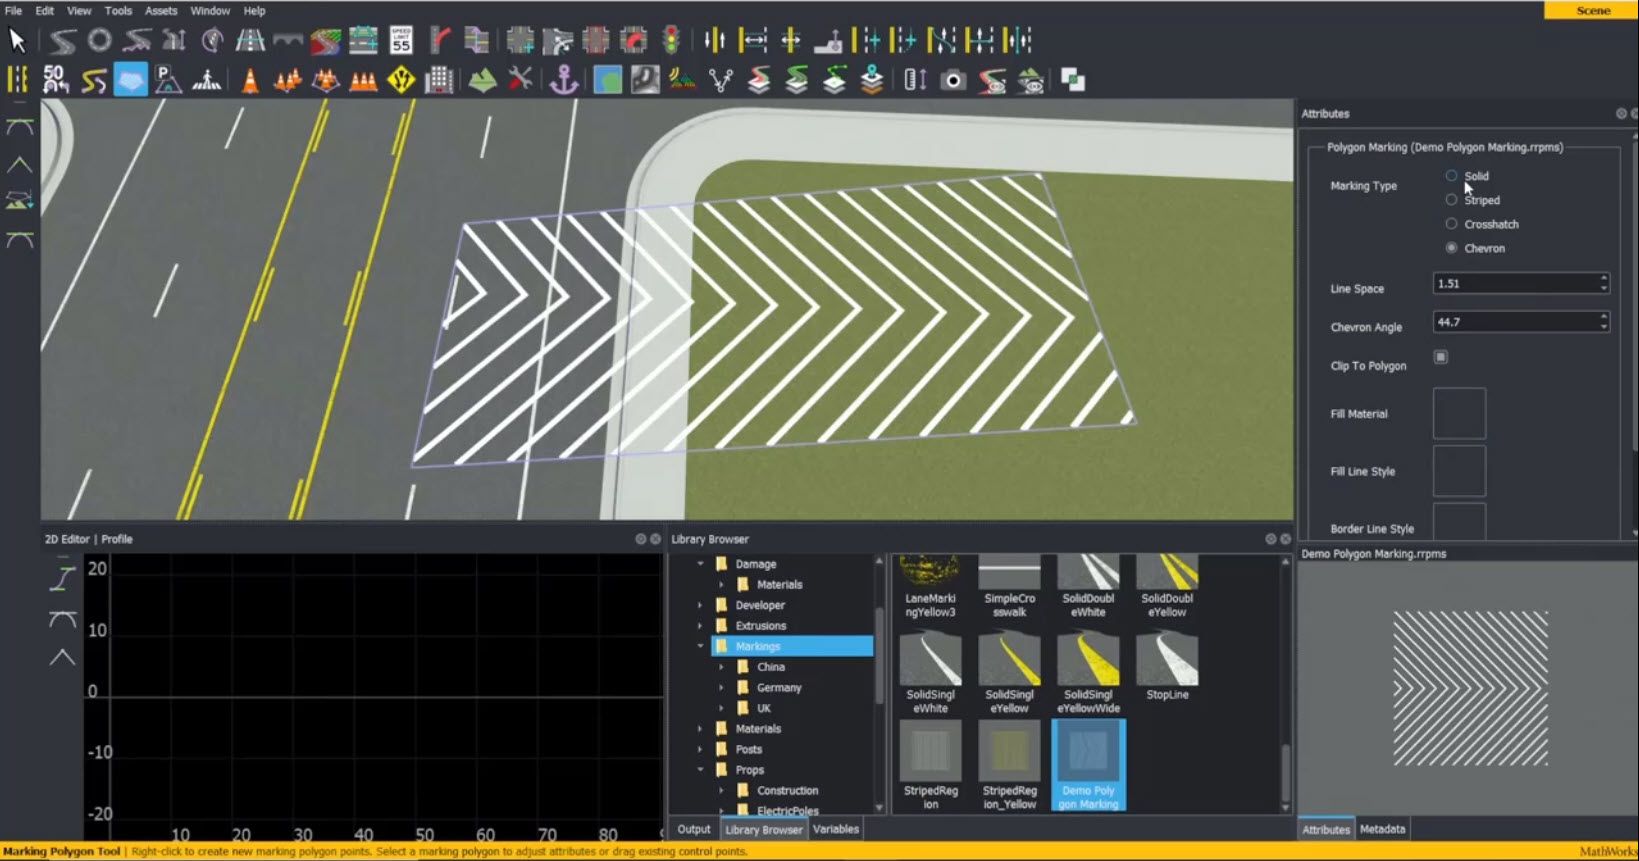 学习如何在RoadRunner交互式编辑软件中创建和编辑标记多边形。